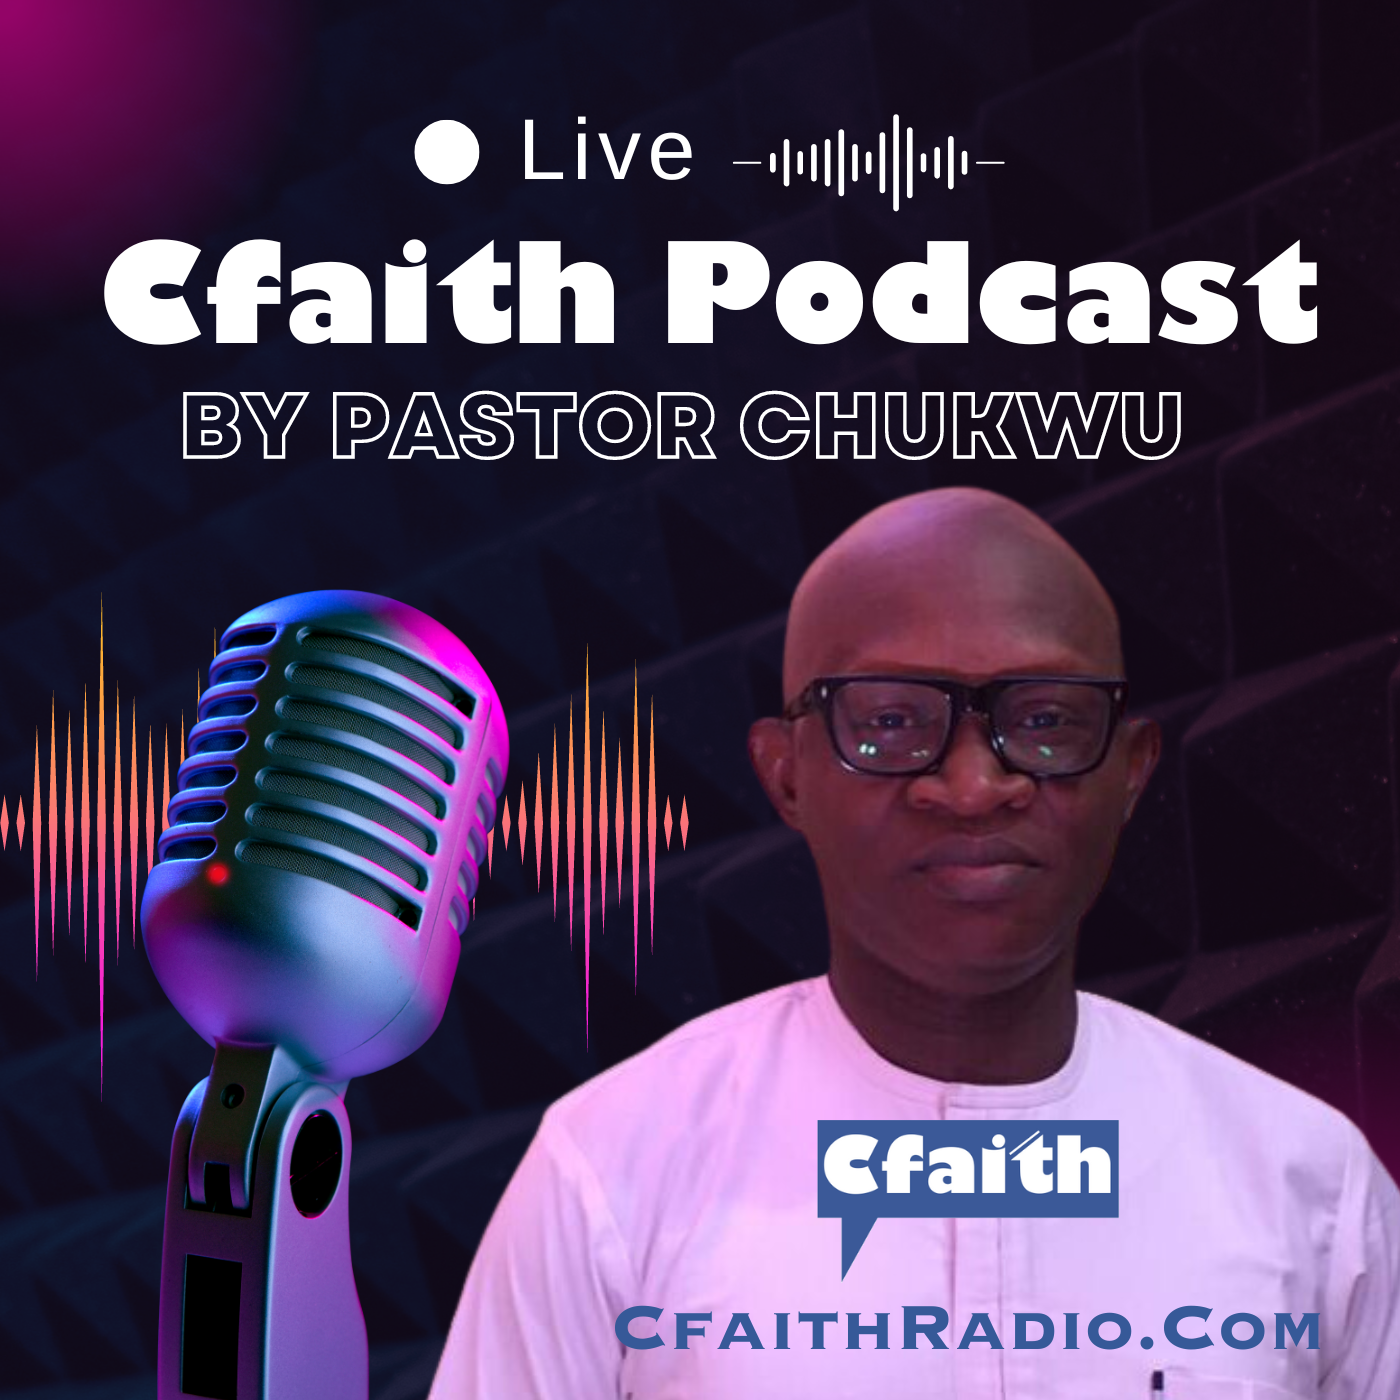 Profile of Pst Chukwu Chibueze - Cfaith President 3